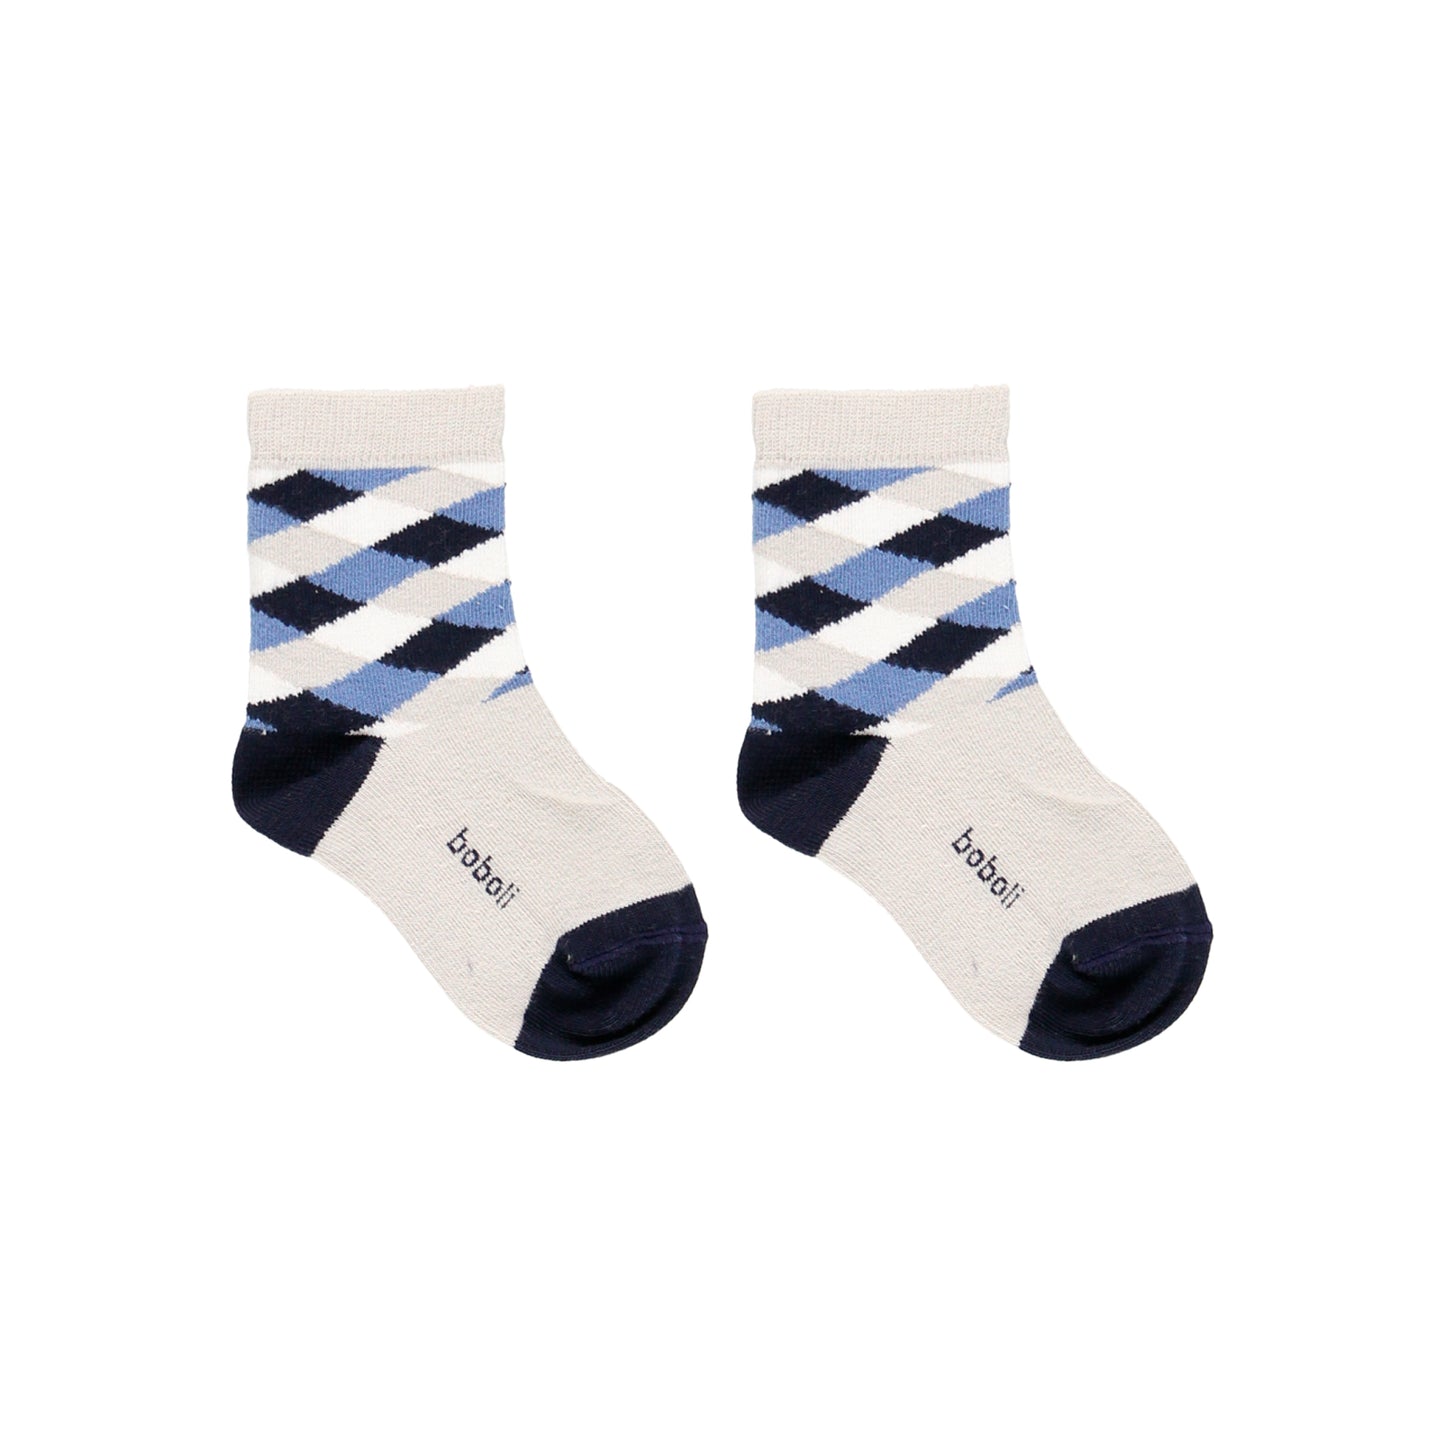 Pack de 3 pares de calcetines de niño en colores blanco con estampados de rombos y rayas Boboli